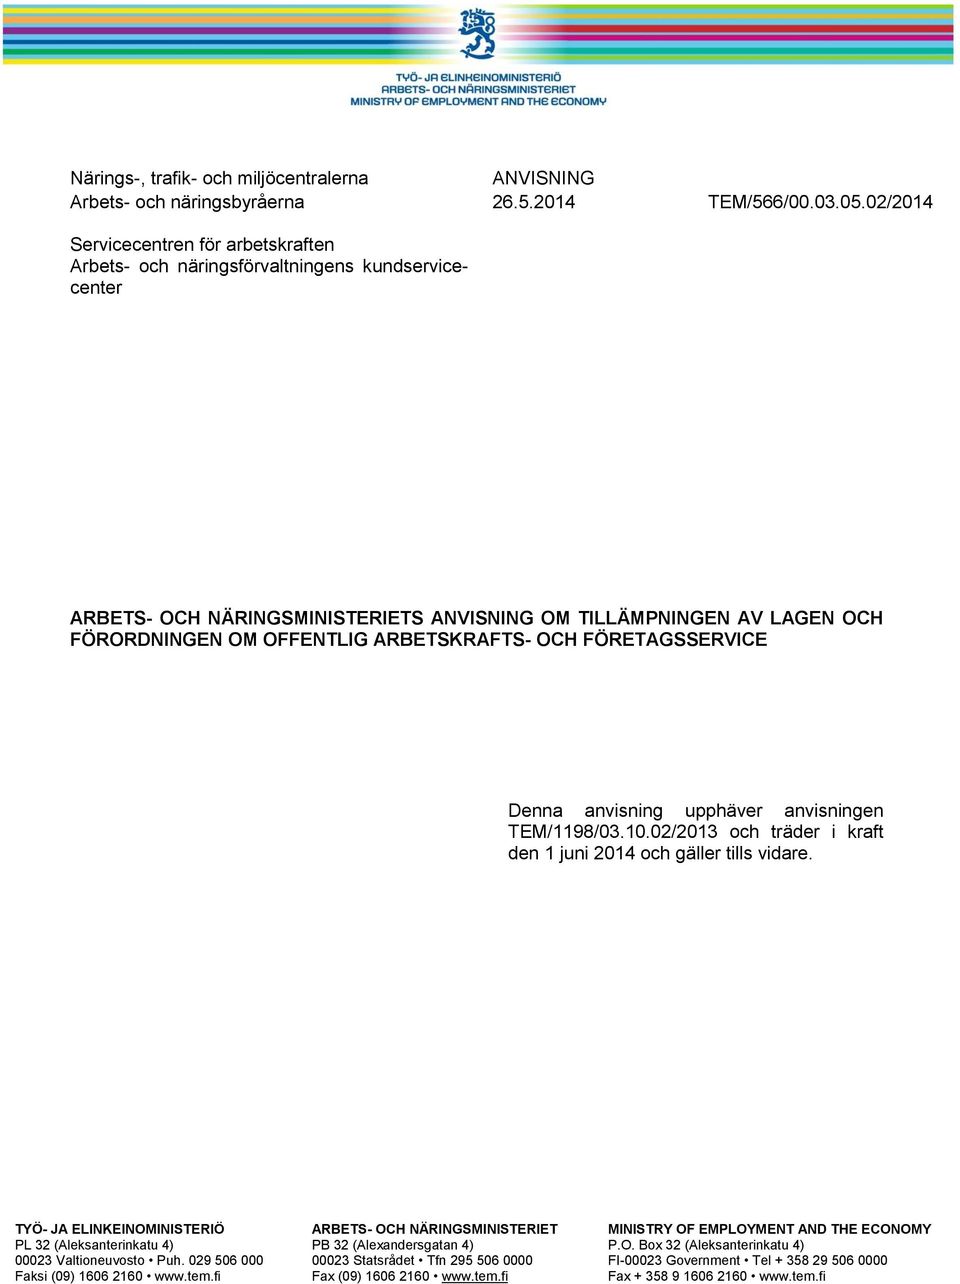 ARBETSKRAFTS- OCH FÖRETAGSSERVICE Denna anvisning upphäver anvisningen TEM/1198/03.10.02/2013 och träder i kraft den 1 juni 2014 och gäller tills vidare.